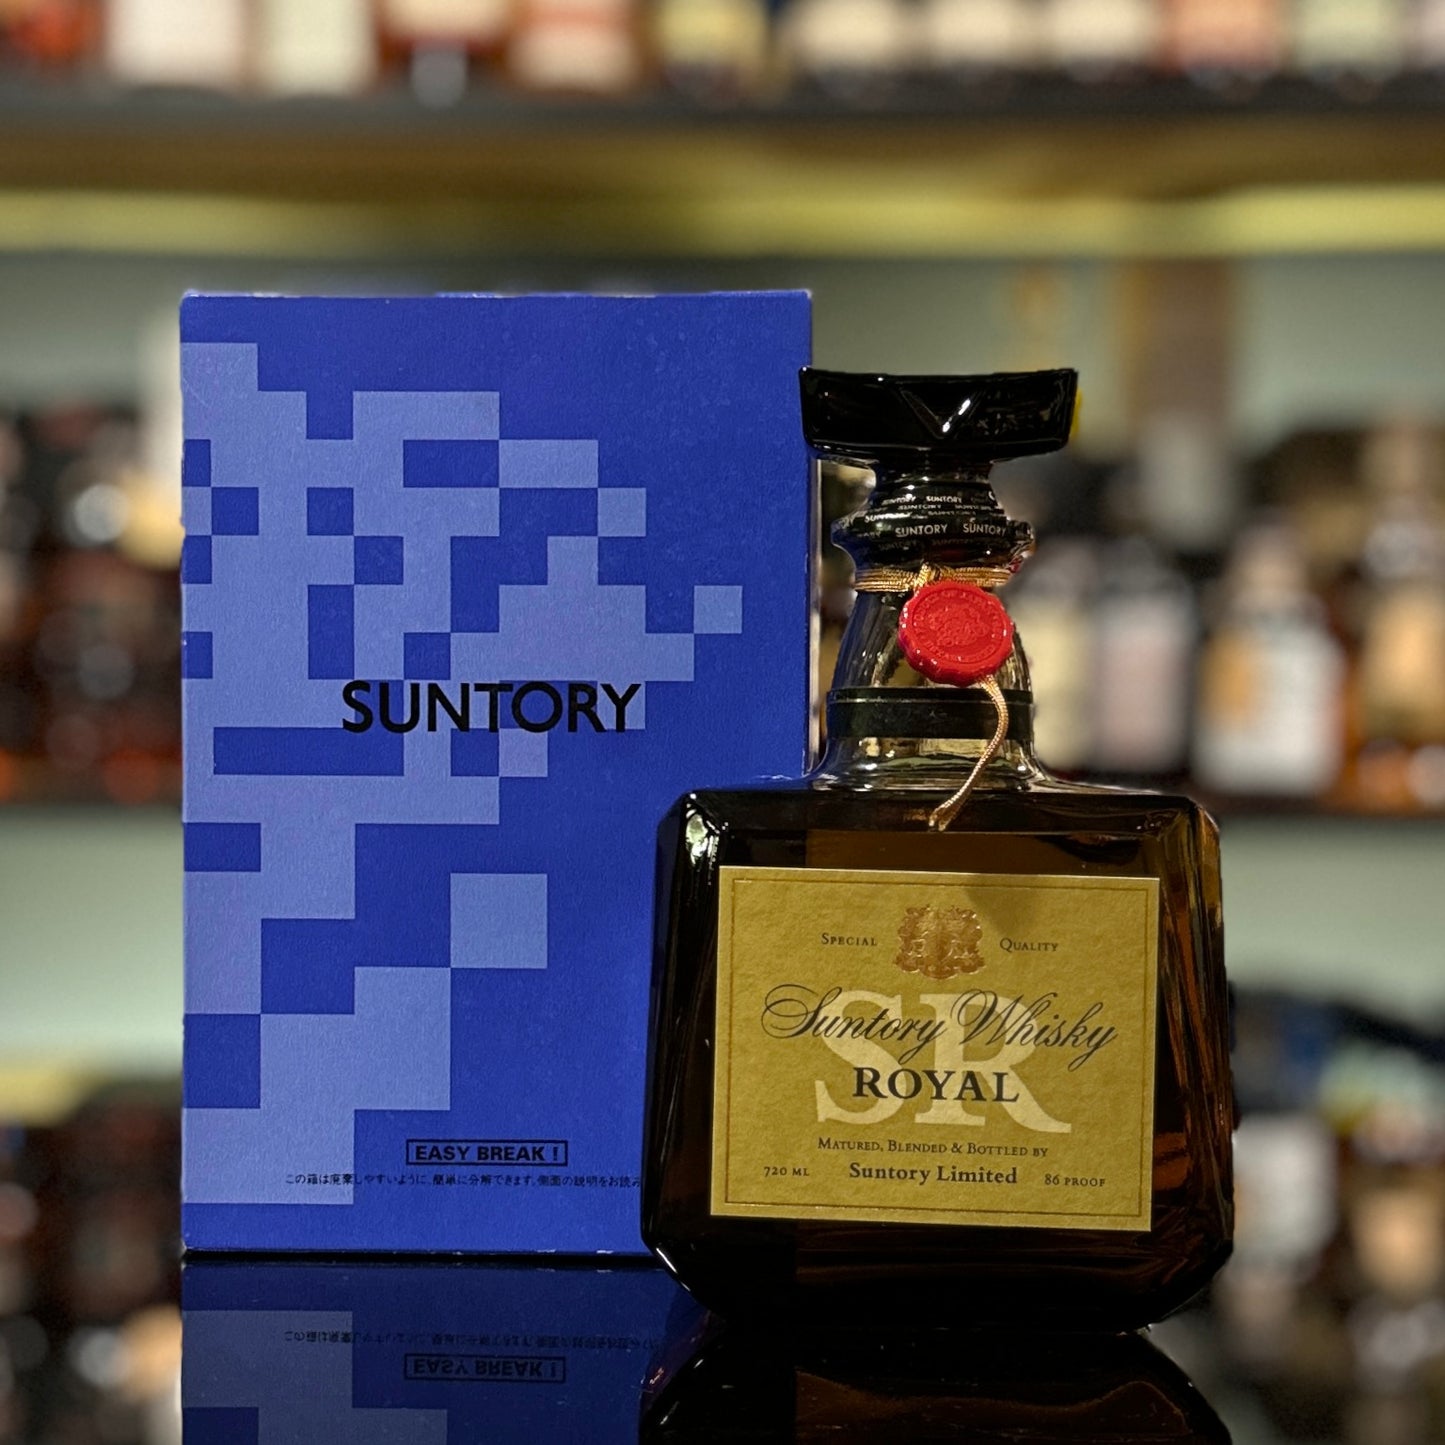 Suntory Royal Blended Japanese Whisky (Blue Box, 720ml)